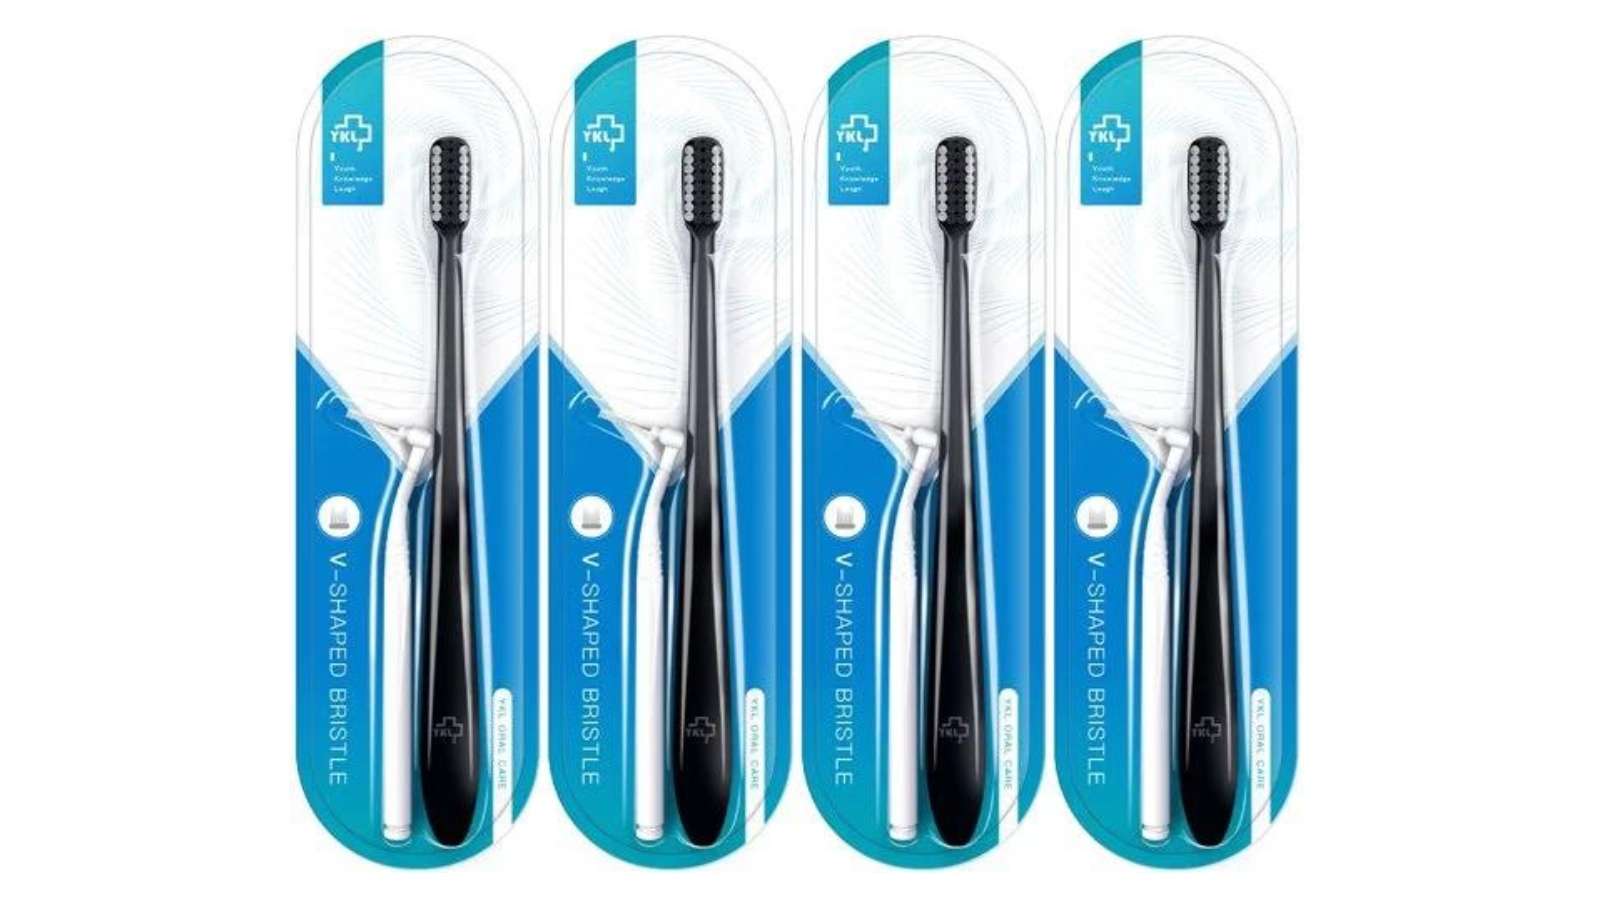 Reviews of best manual toothbrushes - Image of y-kelin manual toothbrush 4-pack